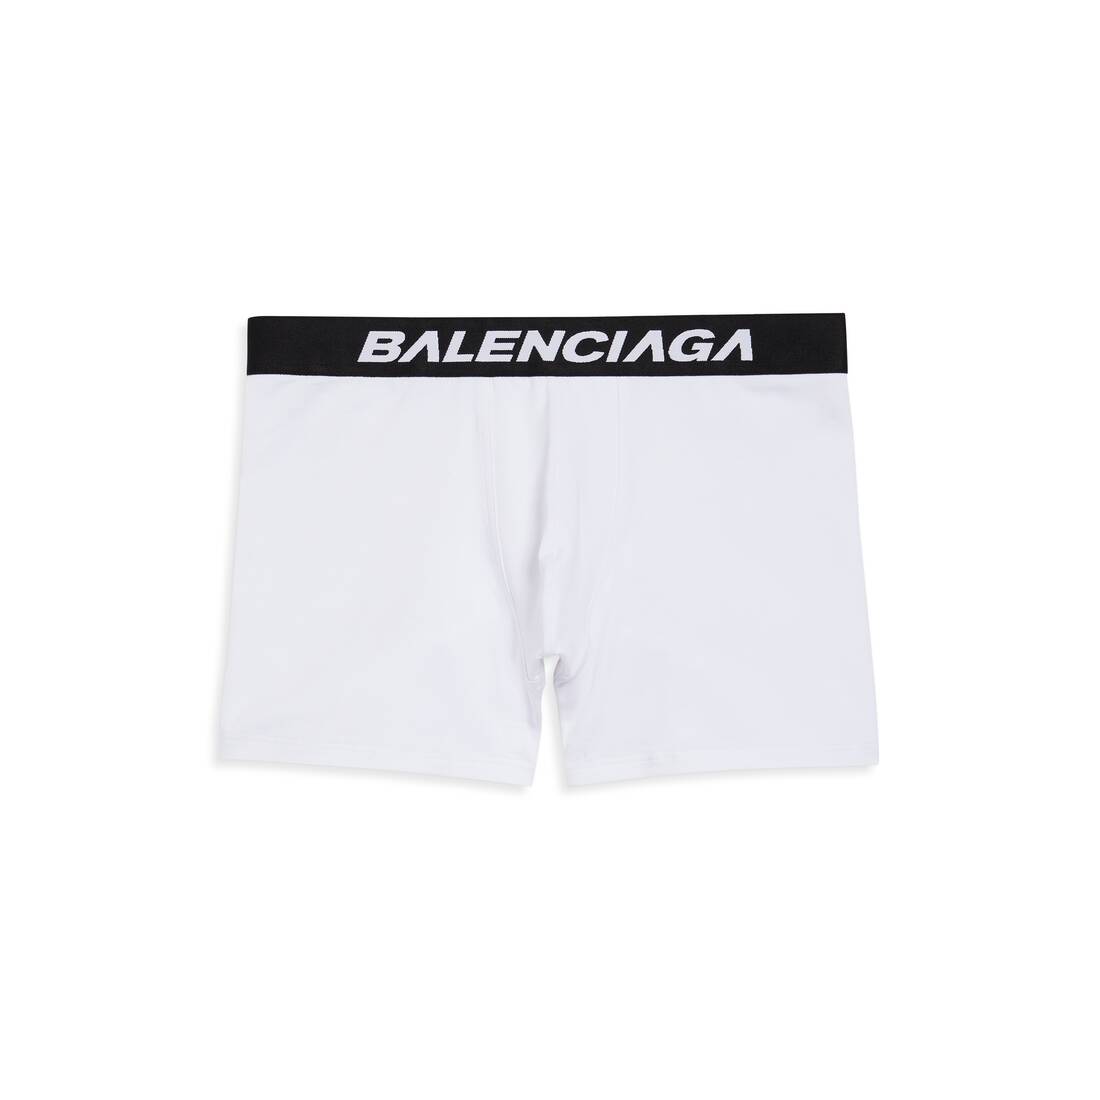 Black Boxers with logo Balenciaga - Vitkac Canada